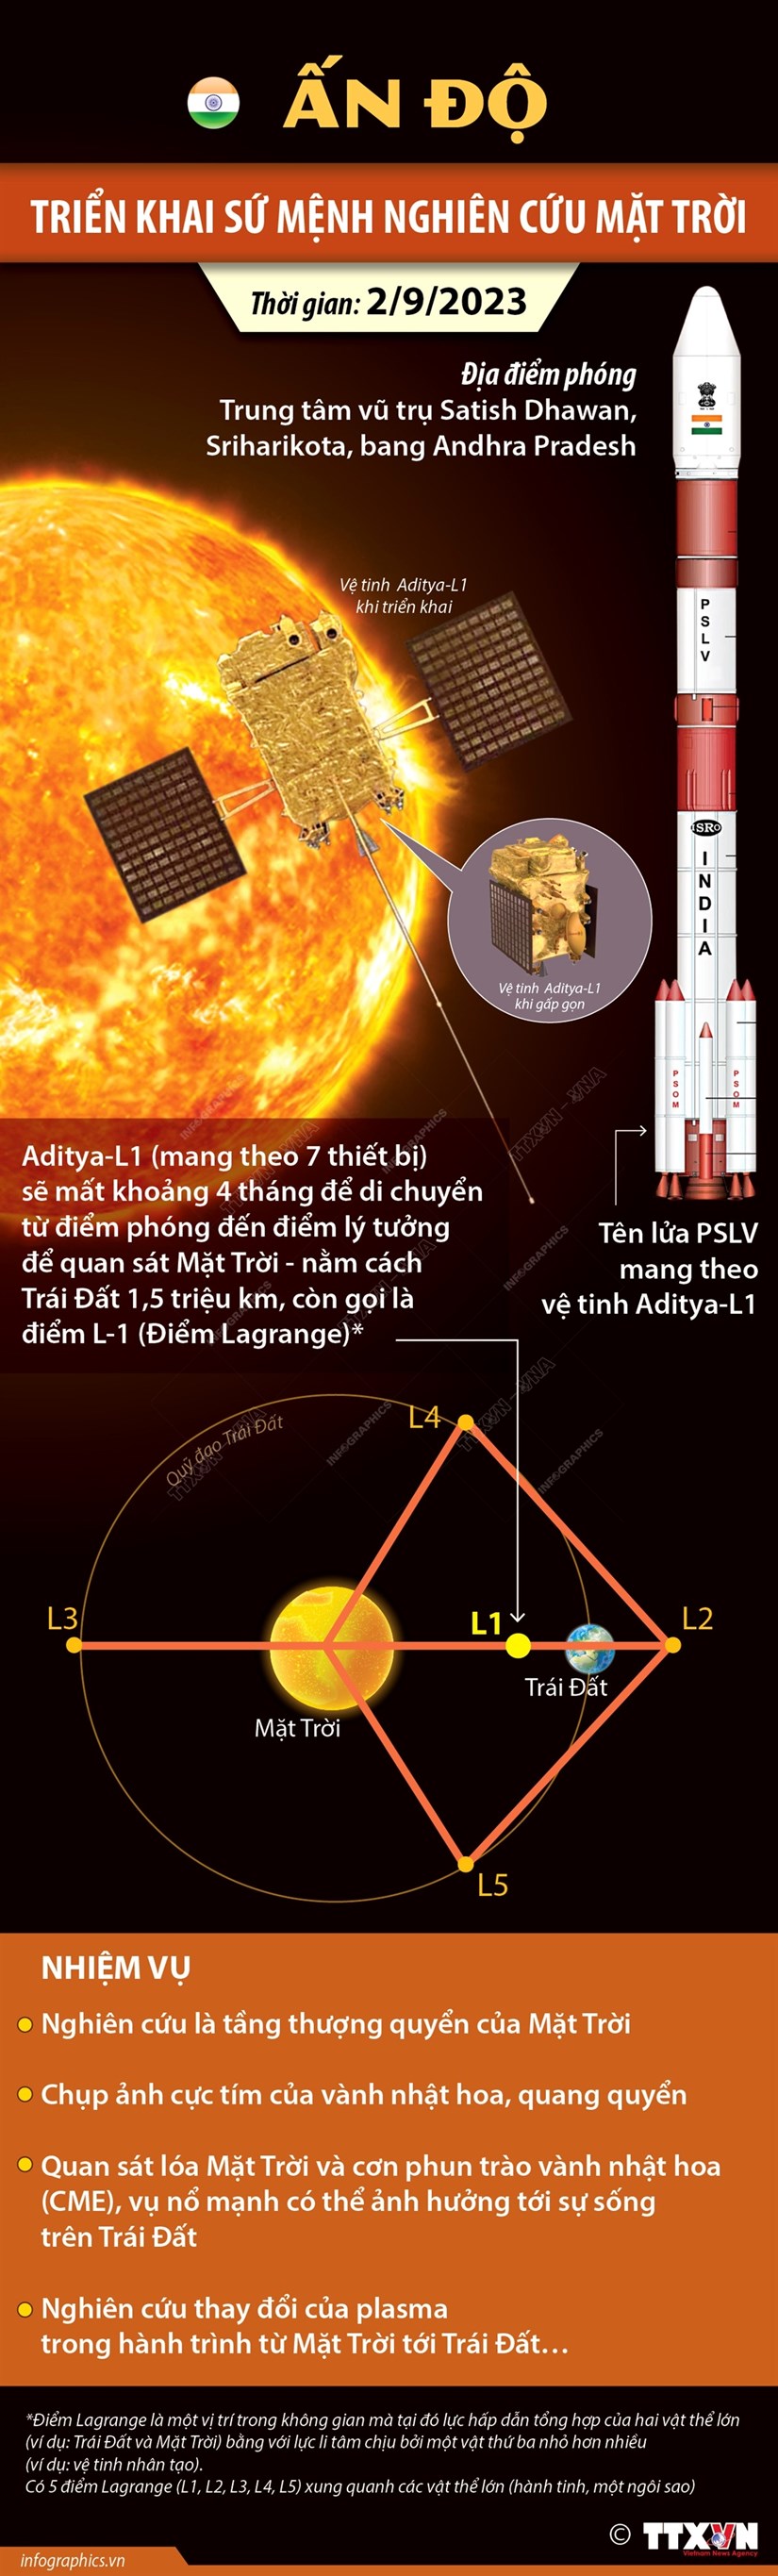 [Infographics] Ấn Độ triển khai sứ mệnh nghiên cứu Mặt Trời - ảnh 1